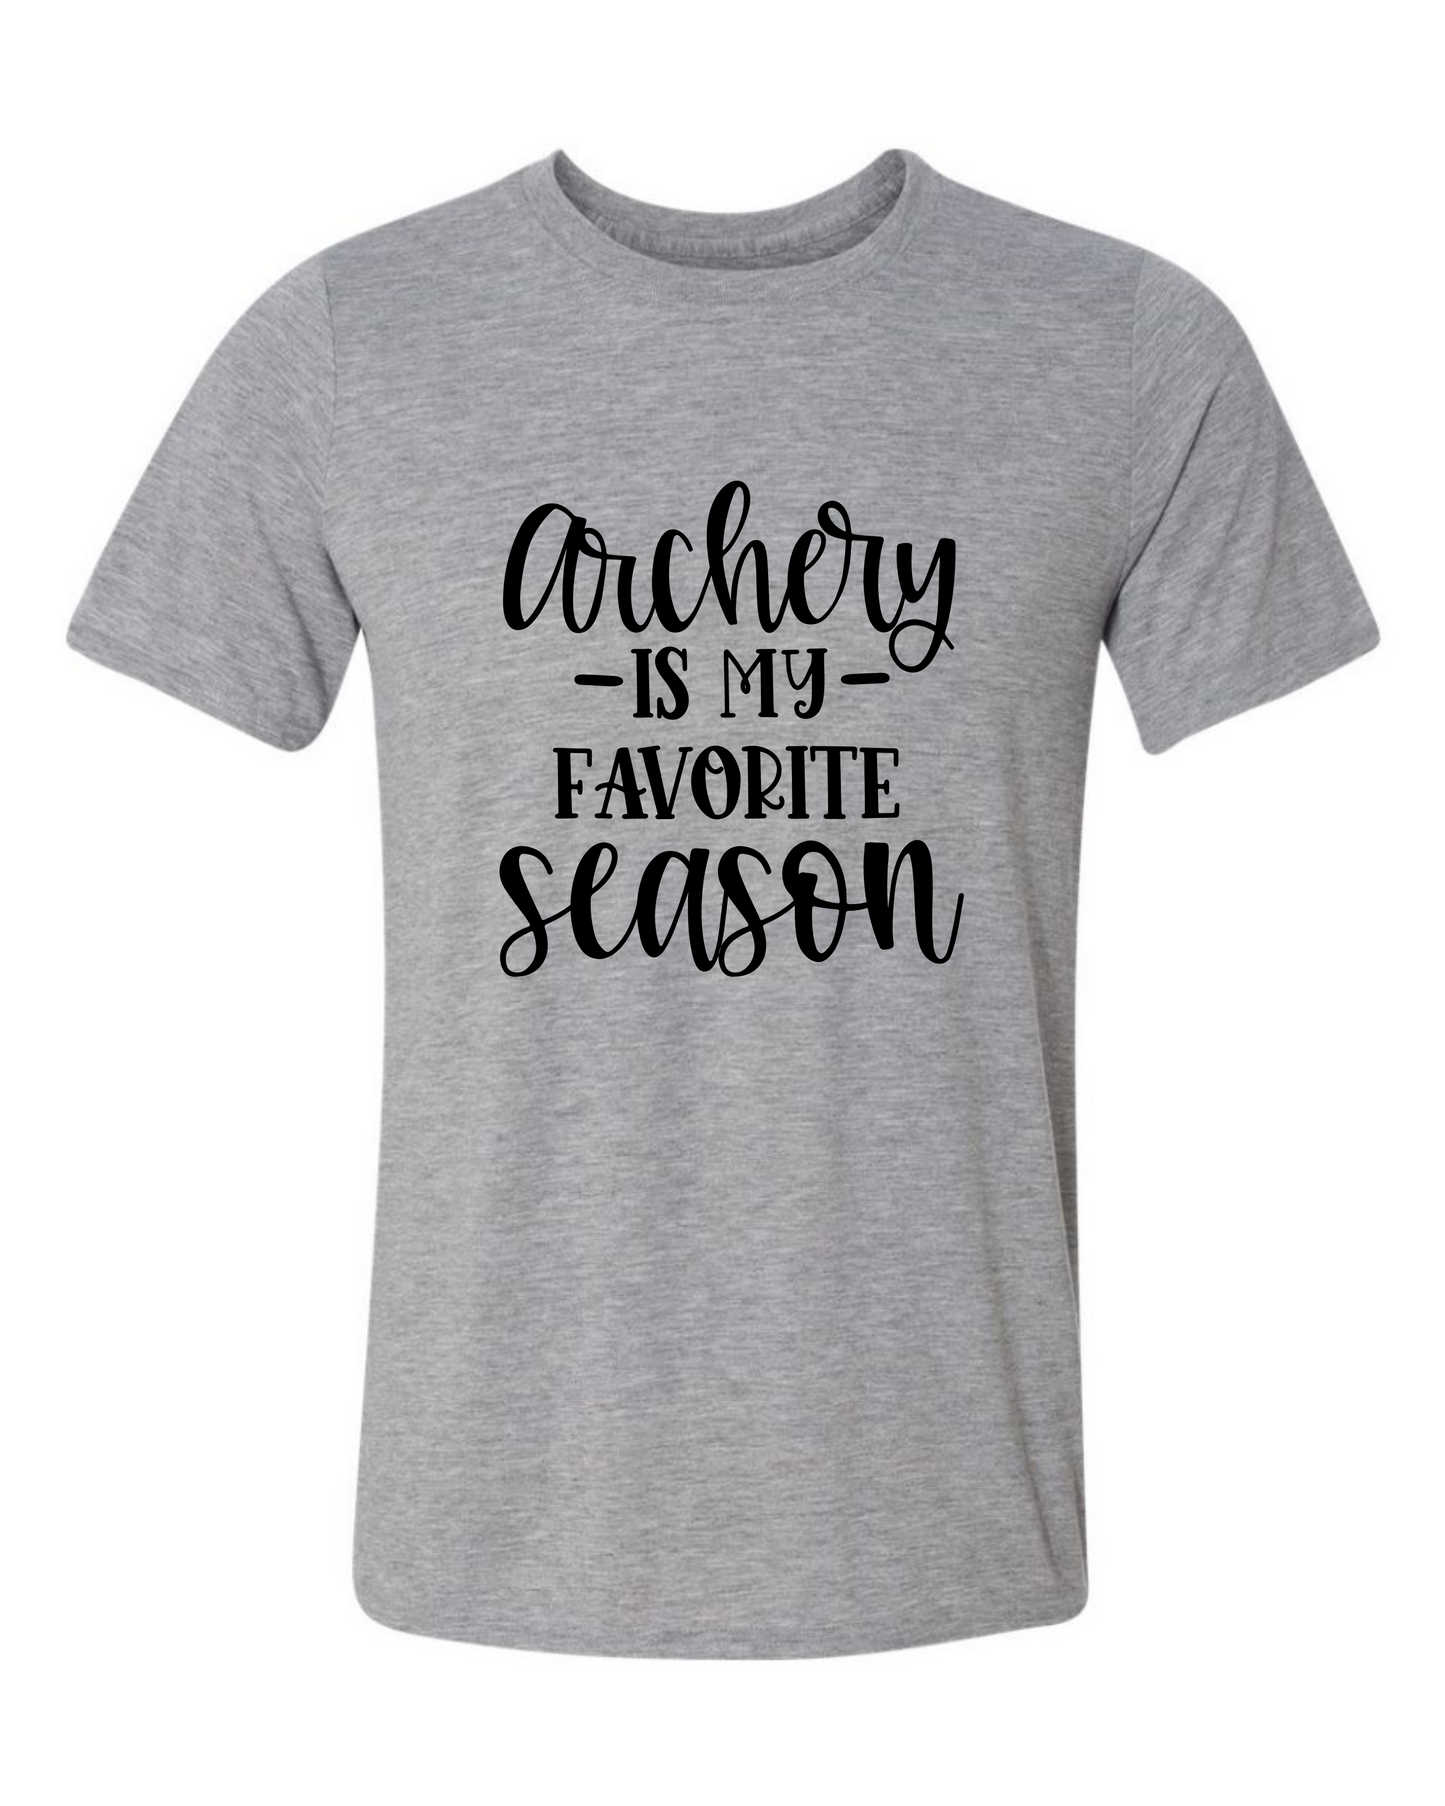 Archery is Favorite Season Tshirt